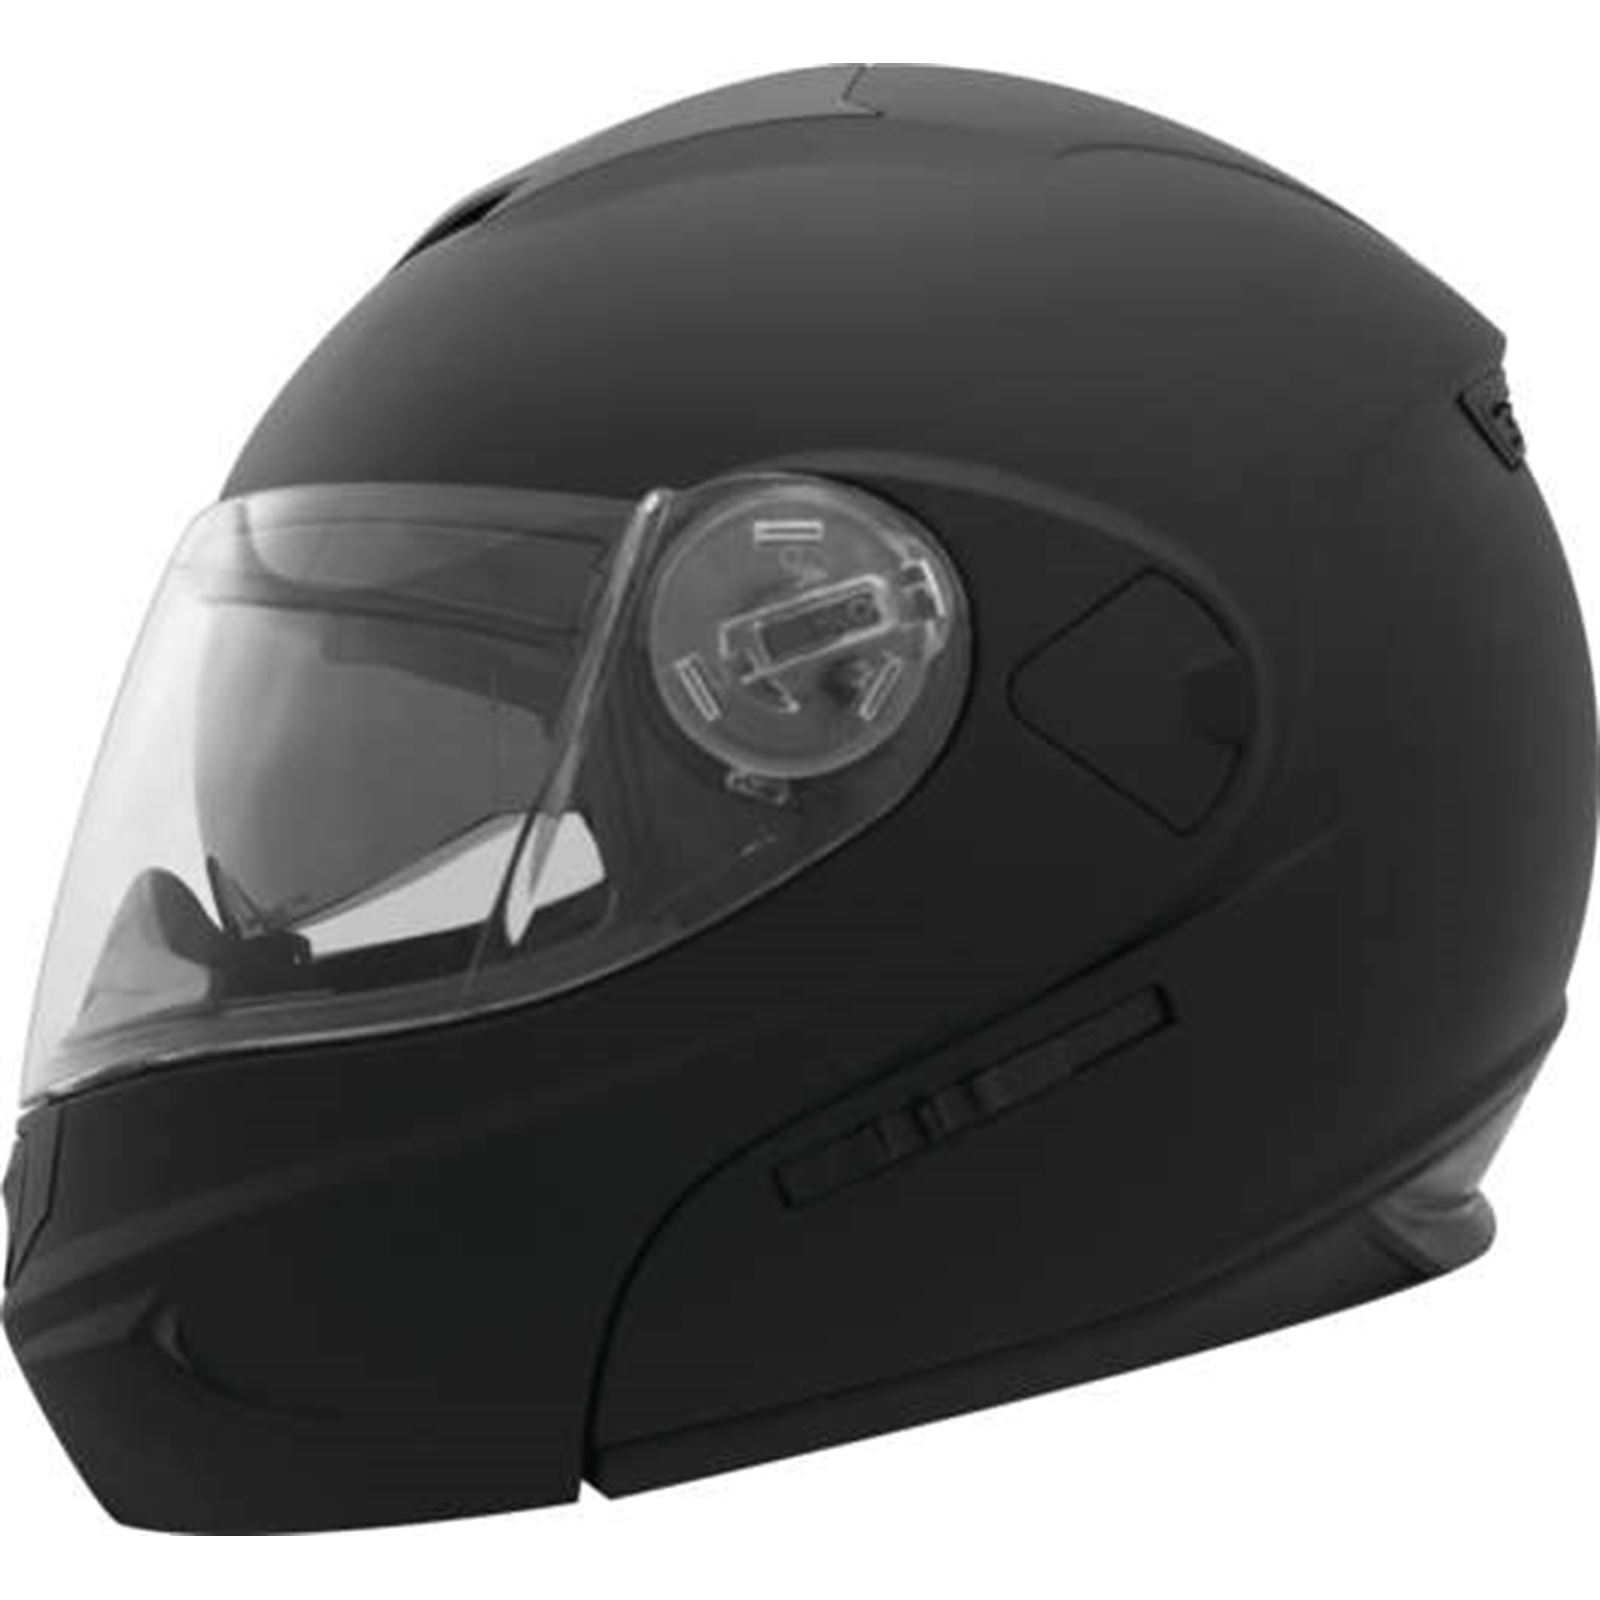 THH Helmets T-797 Helmet Flat Black - Small